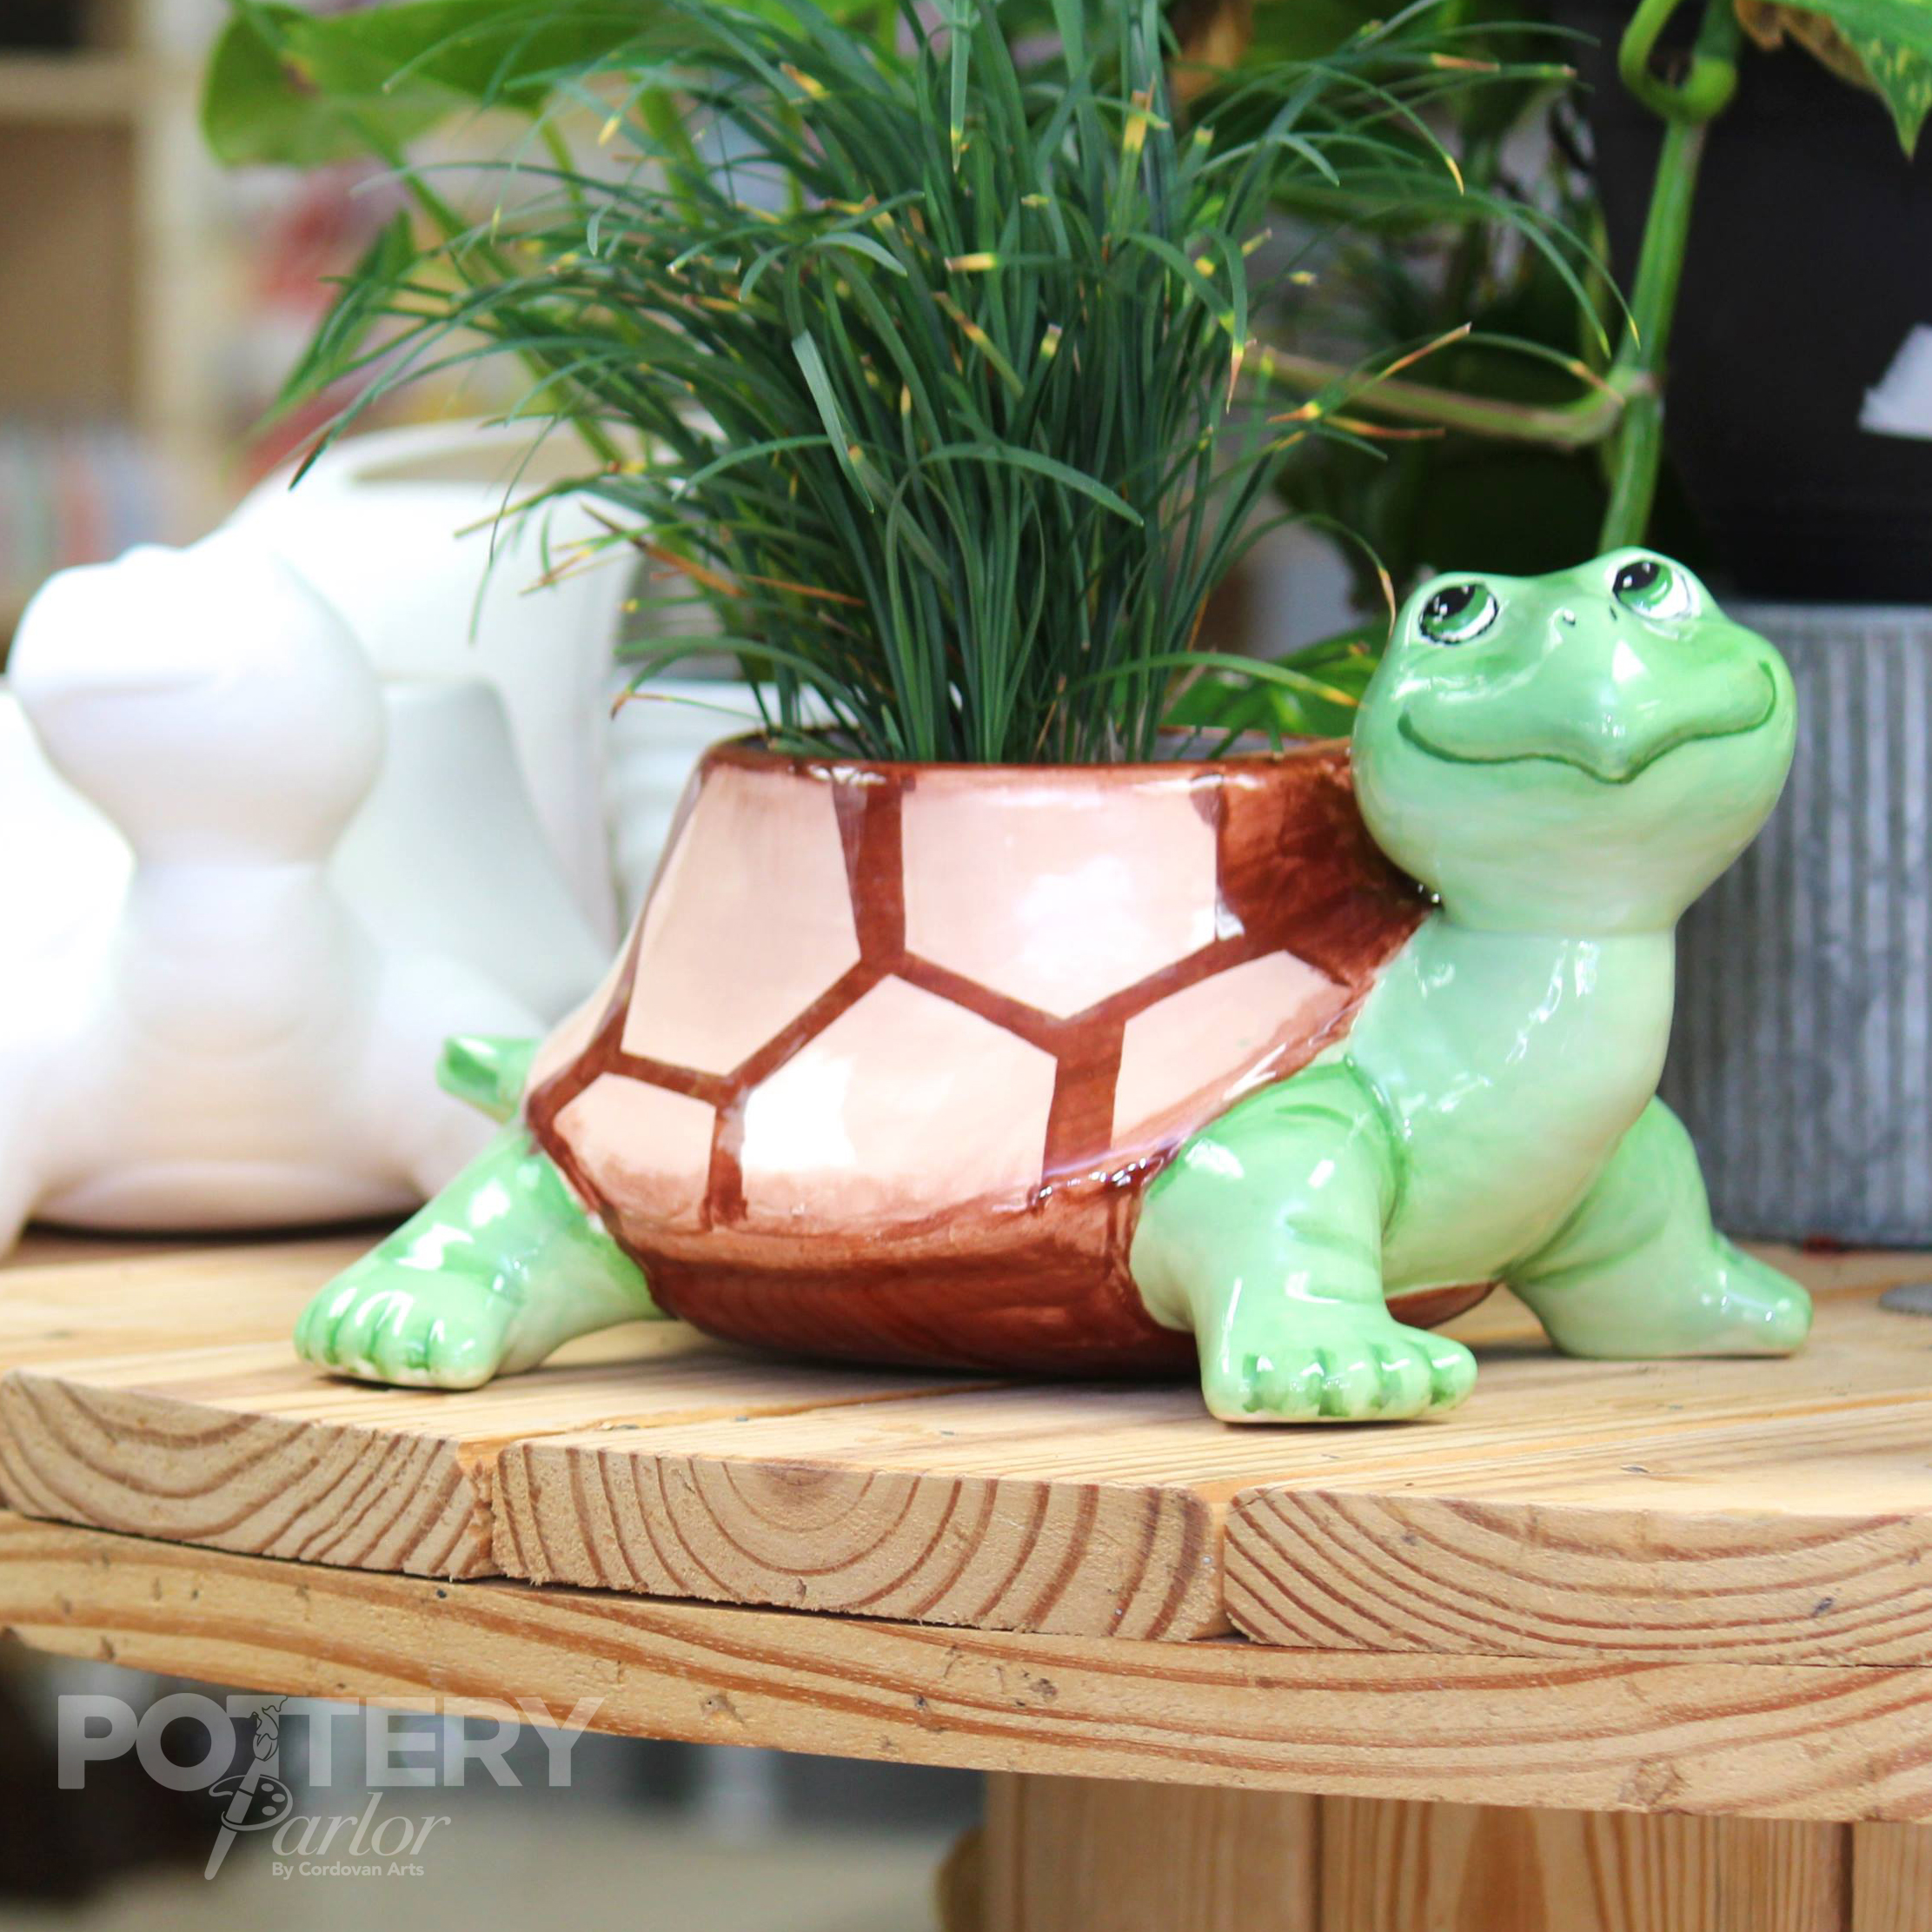 Painted turtle planter ceramic